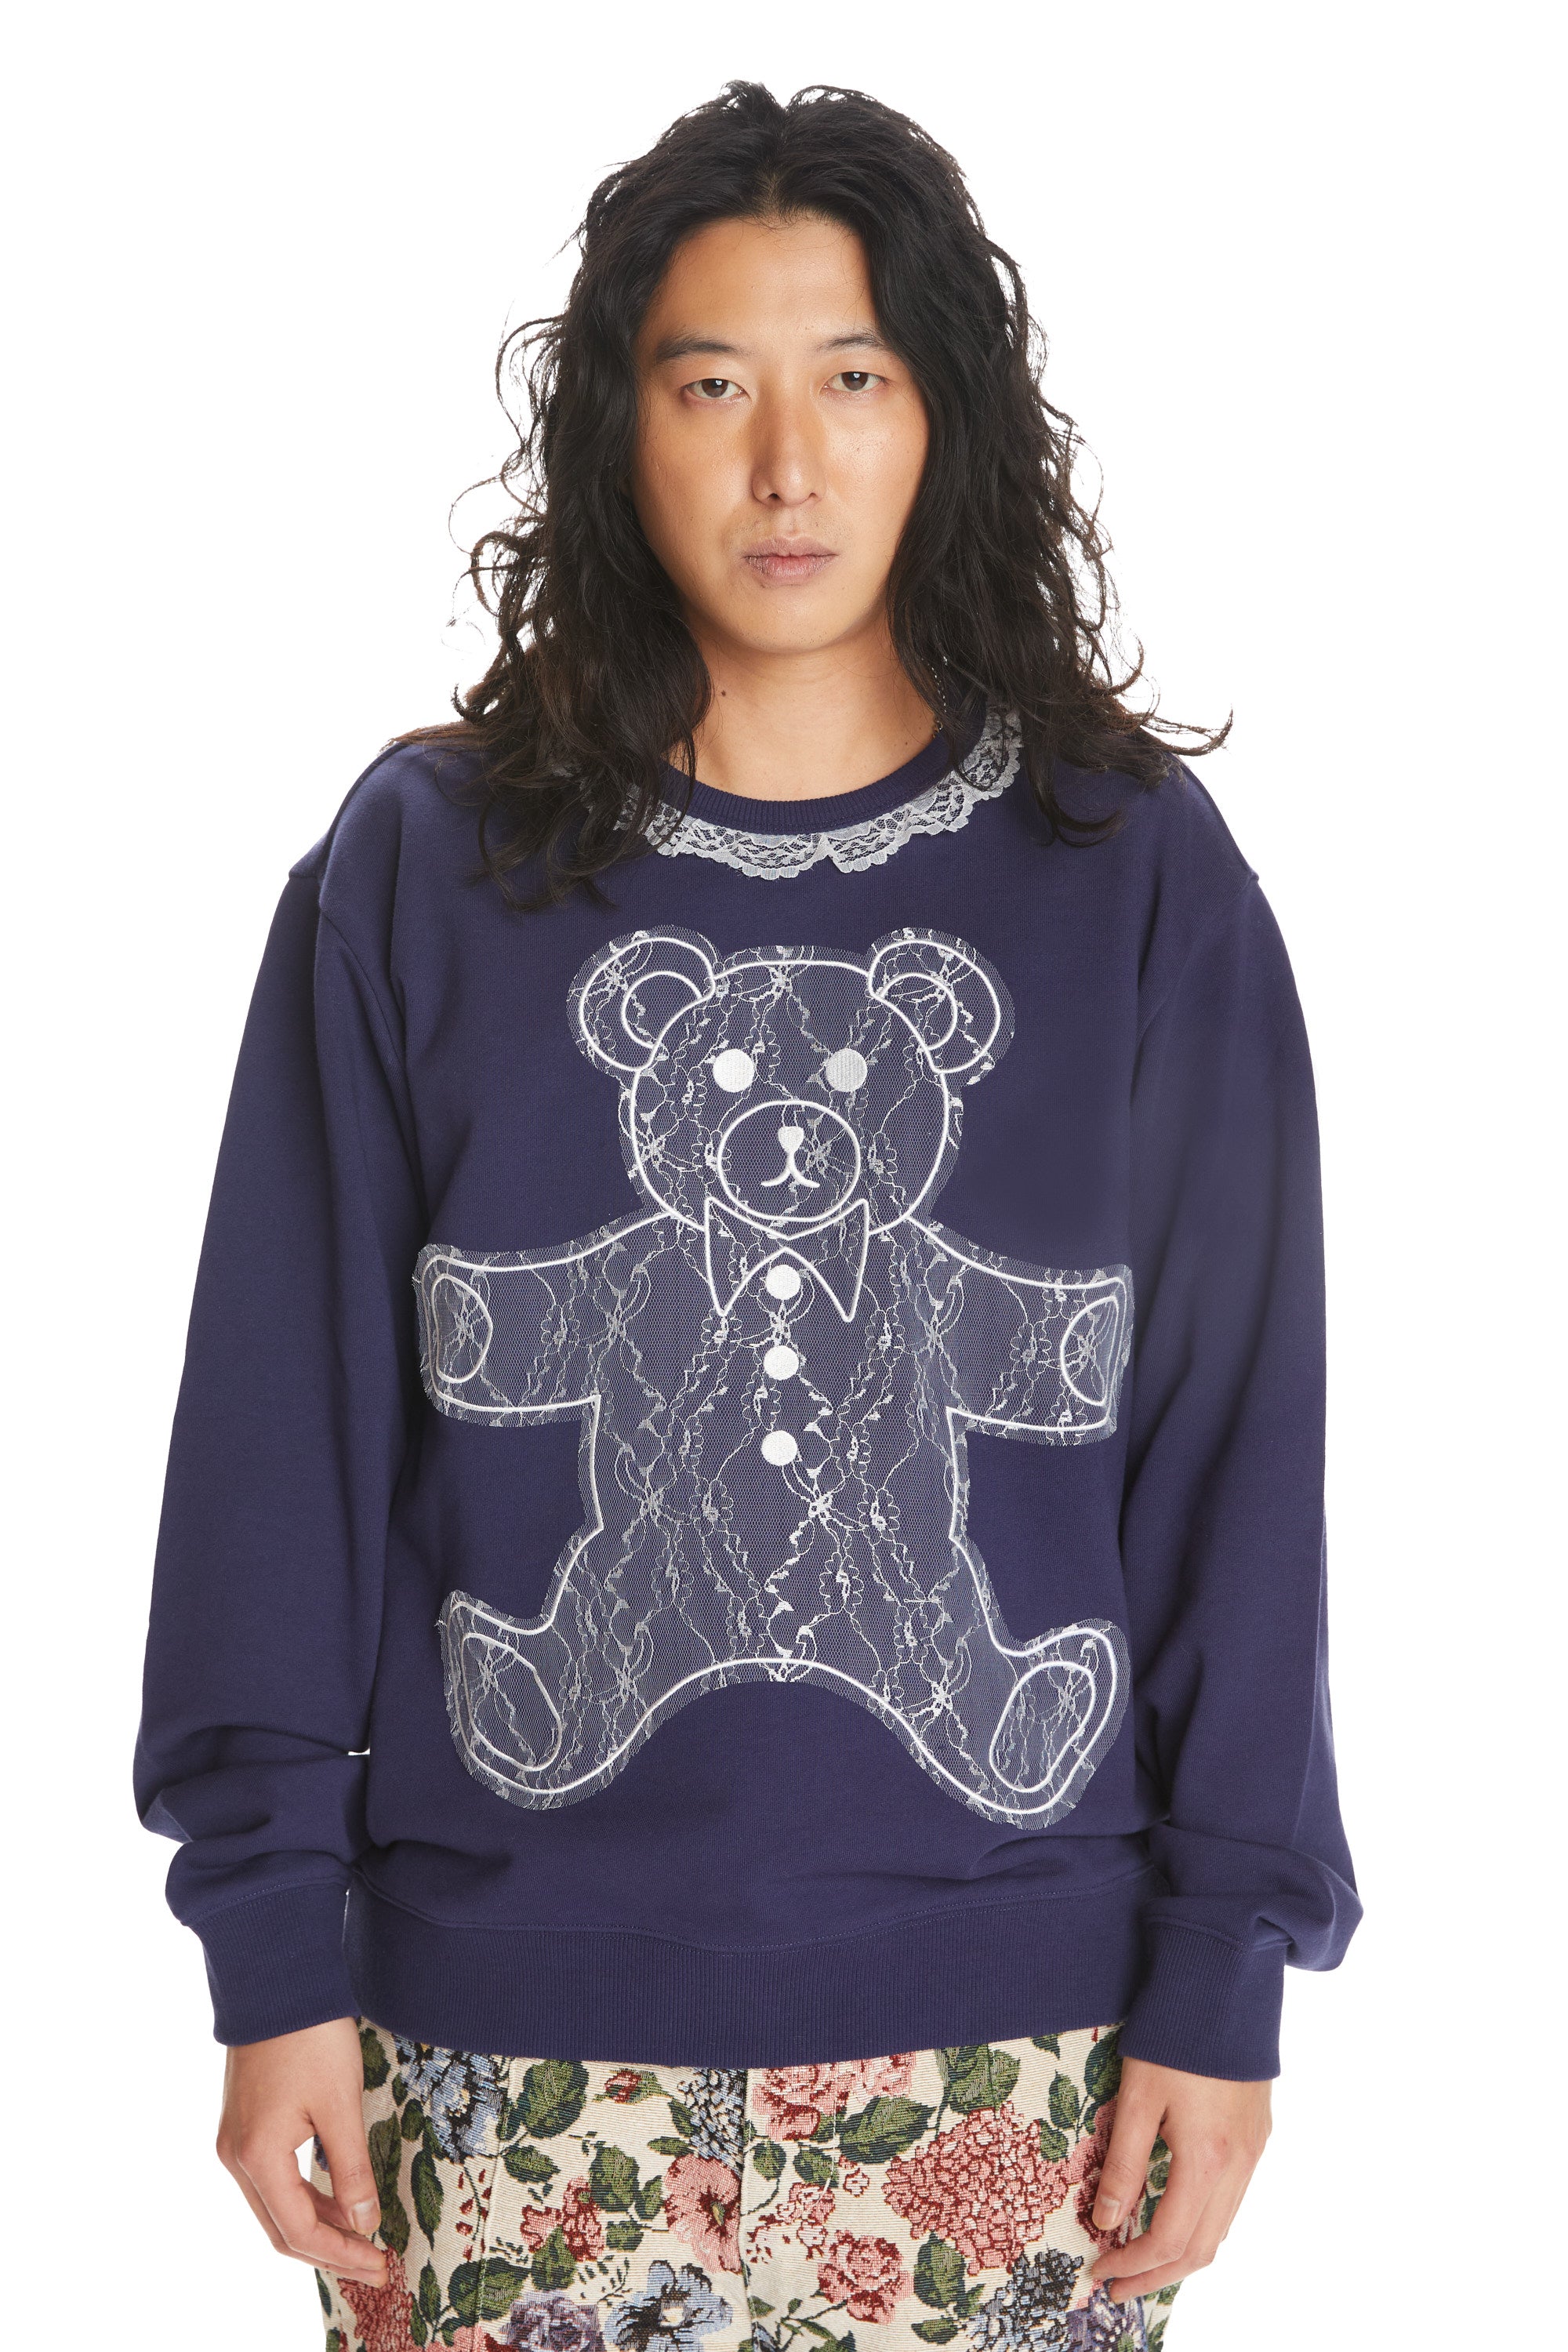 Fluffy Teddy Sweatshirt - Women's Sweatshirt - Lattelierstore